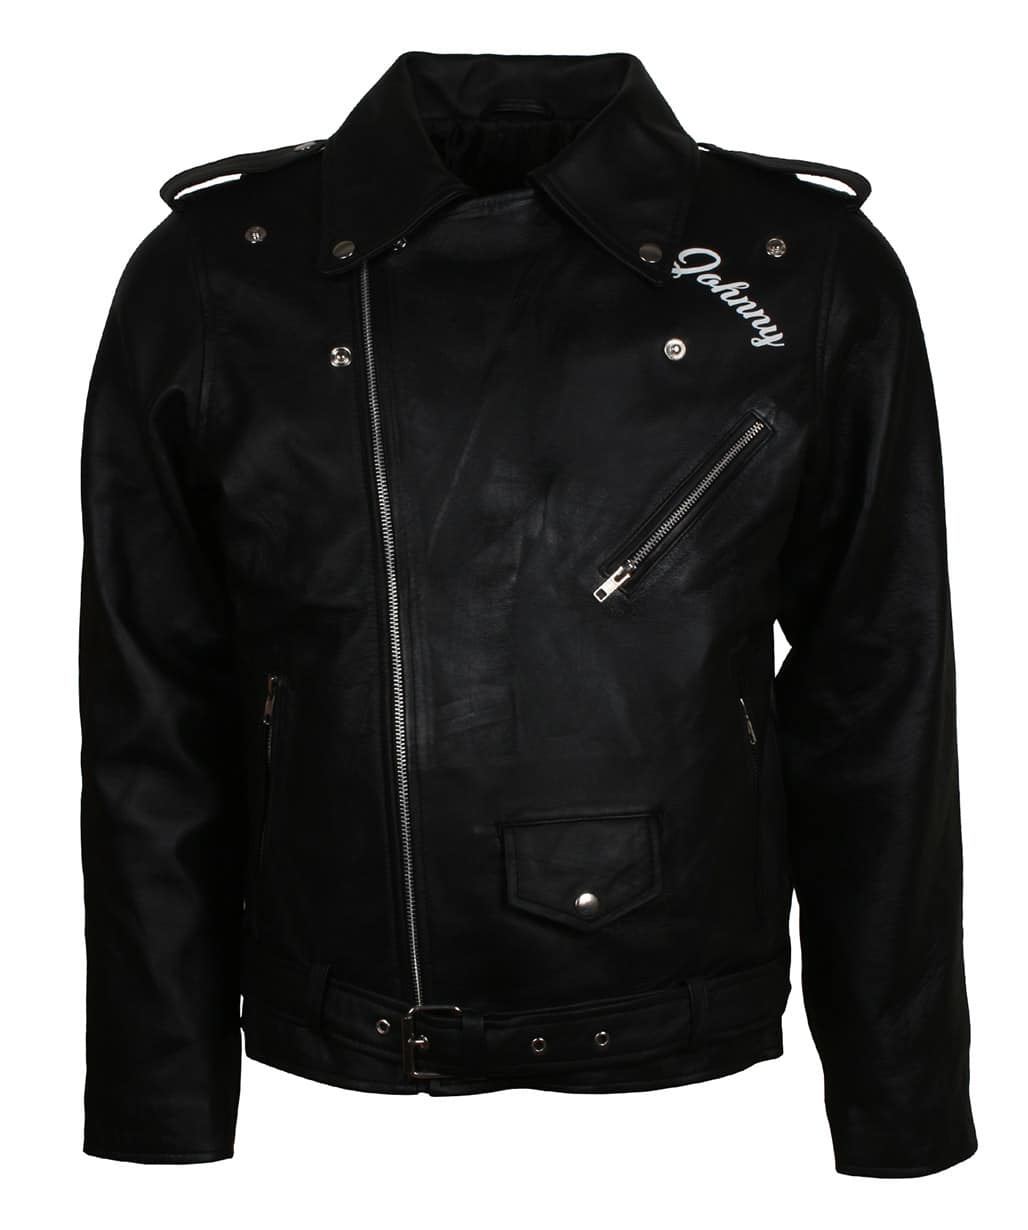 BRMC-Black-Rebels-Wild-One-Men-Motorcycle-Club-Leather-Jacket-Sale